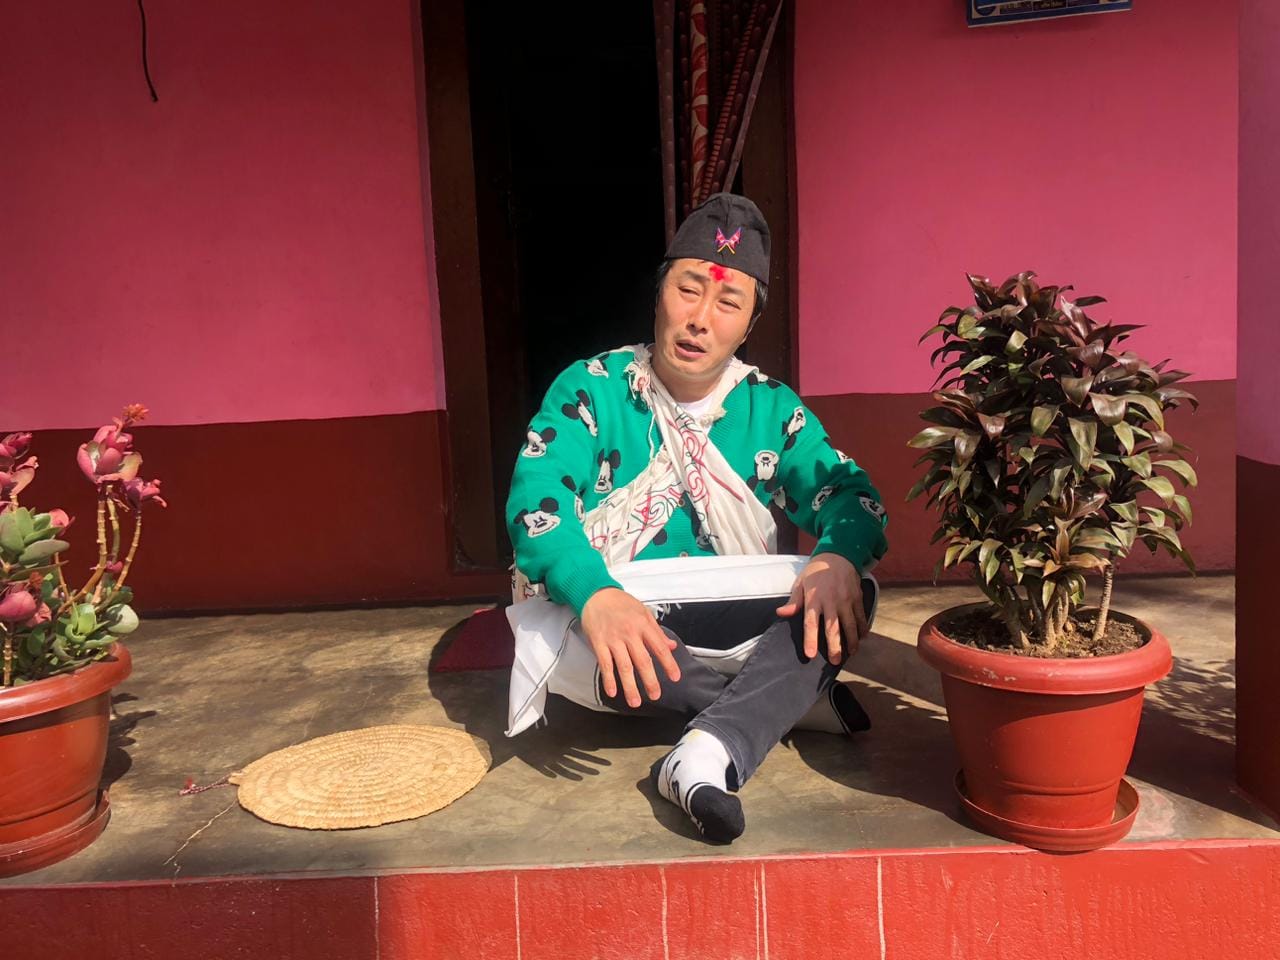 दक्षिण कोरियाली हास्य अभिनेता किम ब्युङ-म्यान नेपाल भ्रमणमा